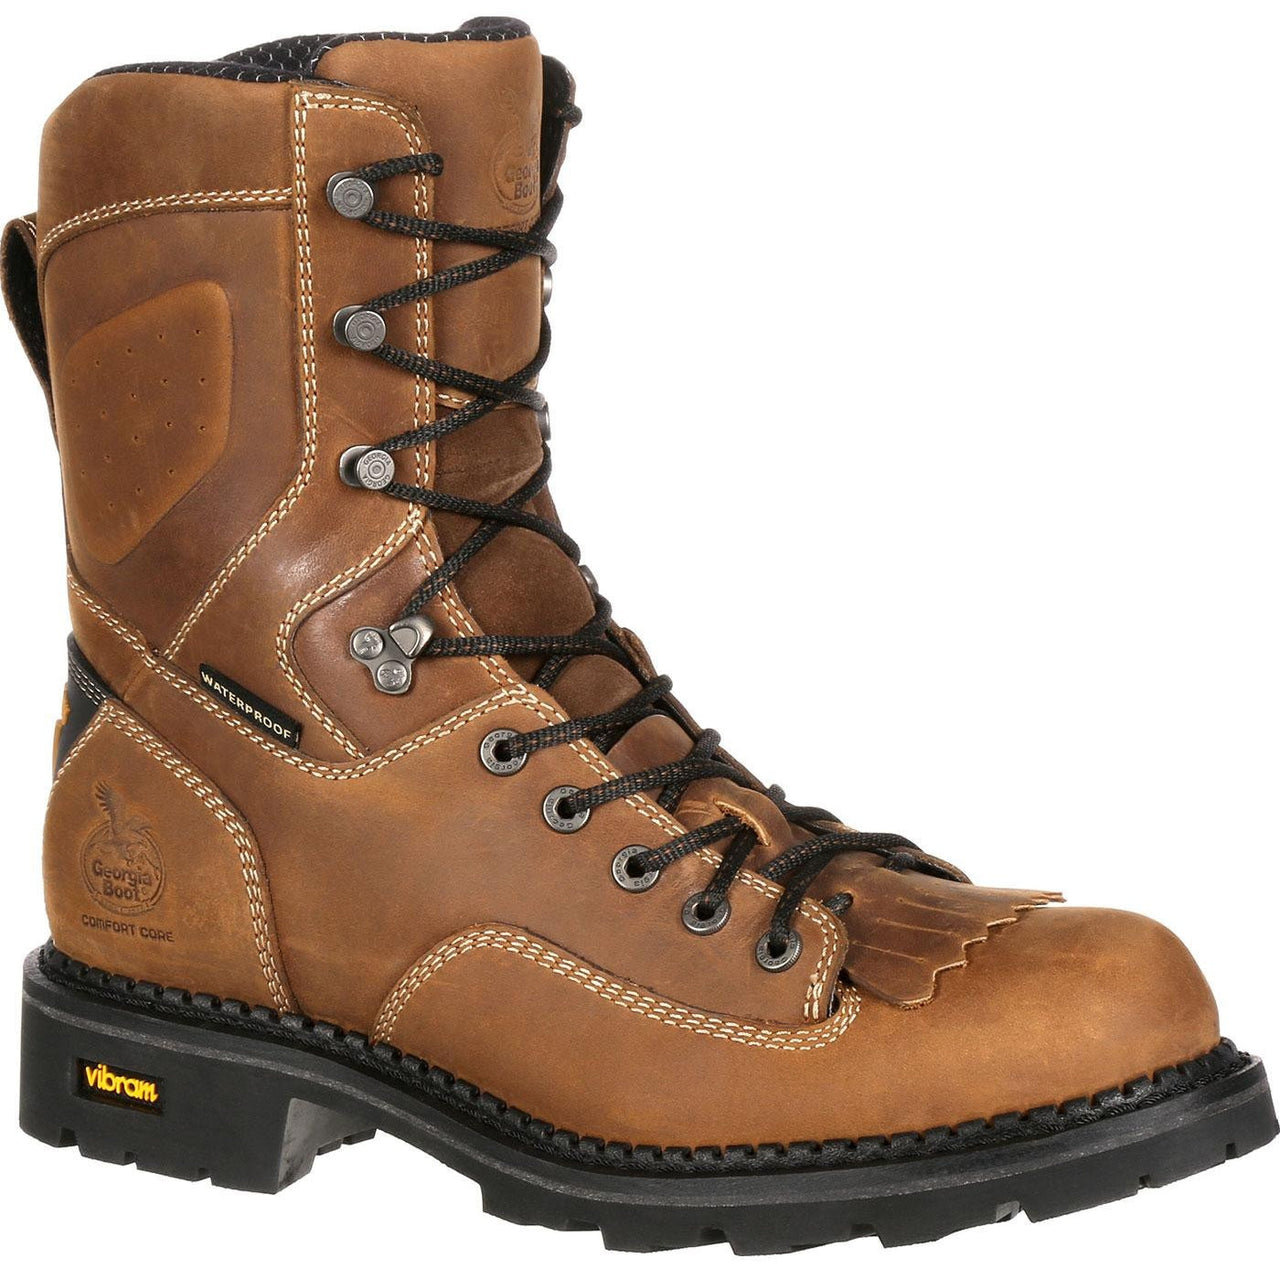 Men's Georgia Boots Comfort Core Composite Toe Waterproof Logger Work Boots Brown - yeehawcowboy